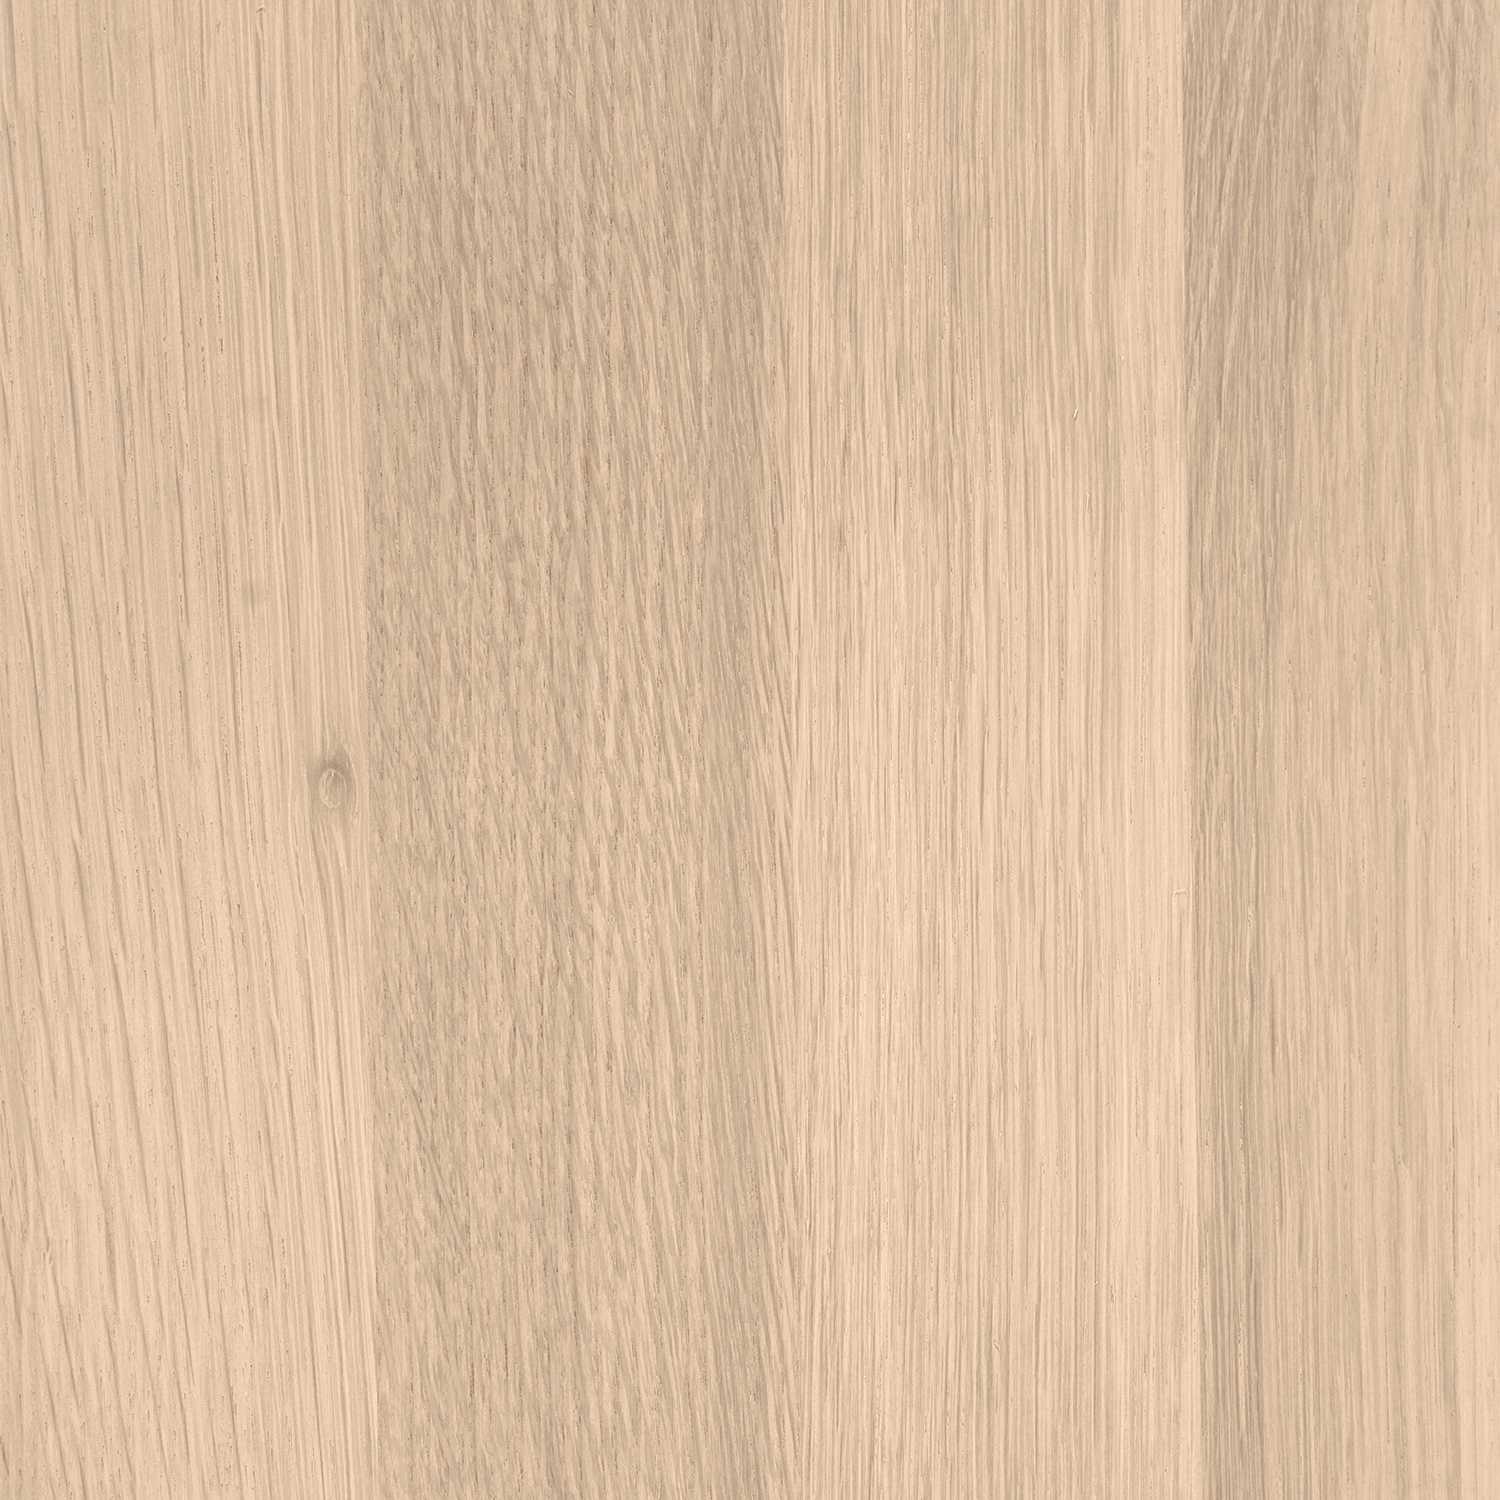  Leimholzplatte Eiche nach Maß - 4 cm dick -  inkl. Aussparung -  Eichenholz A-Qualität- Eiche Massivholzplatte - verleimt & künstlich getrocknet (HF 8-12%) - 15-120x20-350 cm